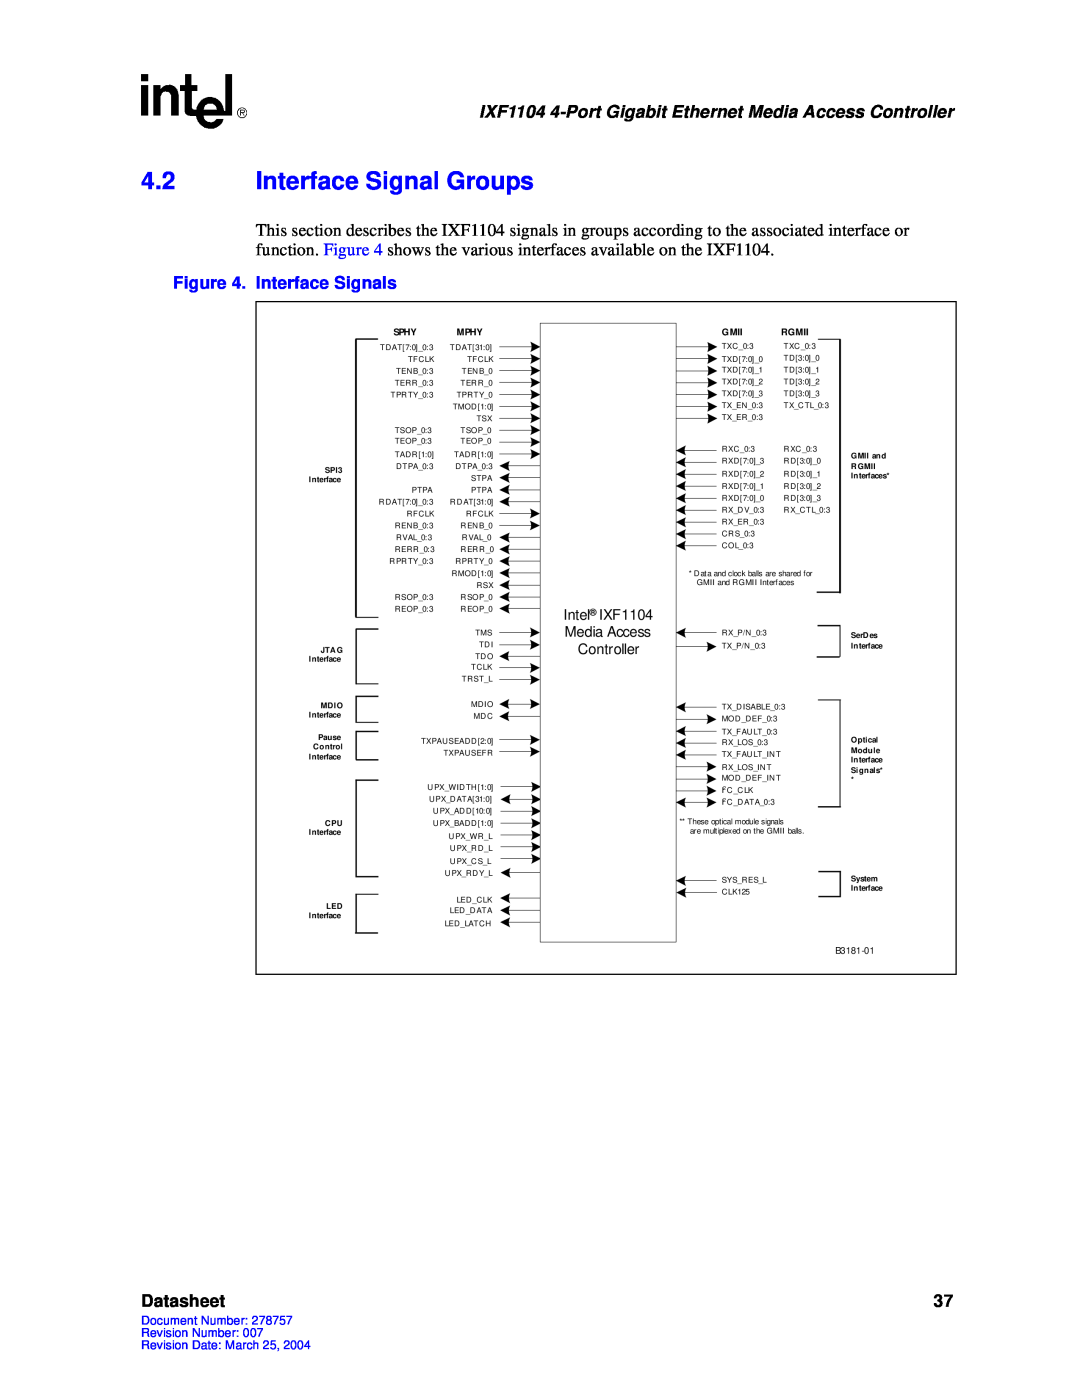 Intel IXF1104 manual 4.2Interface Signal Groups, Datasheet, Sphy Mphy, Gmii, Rgmii 